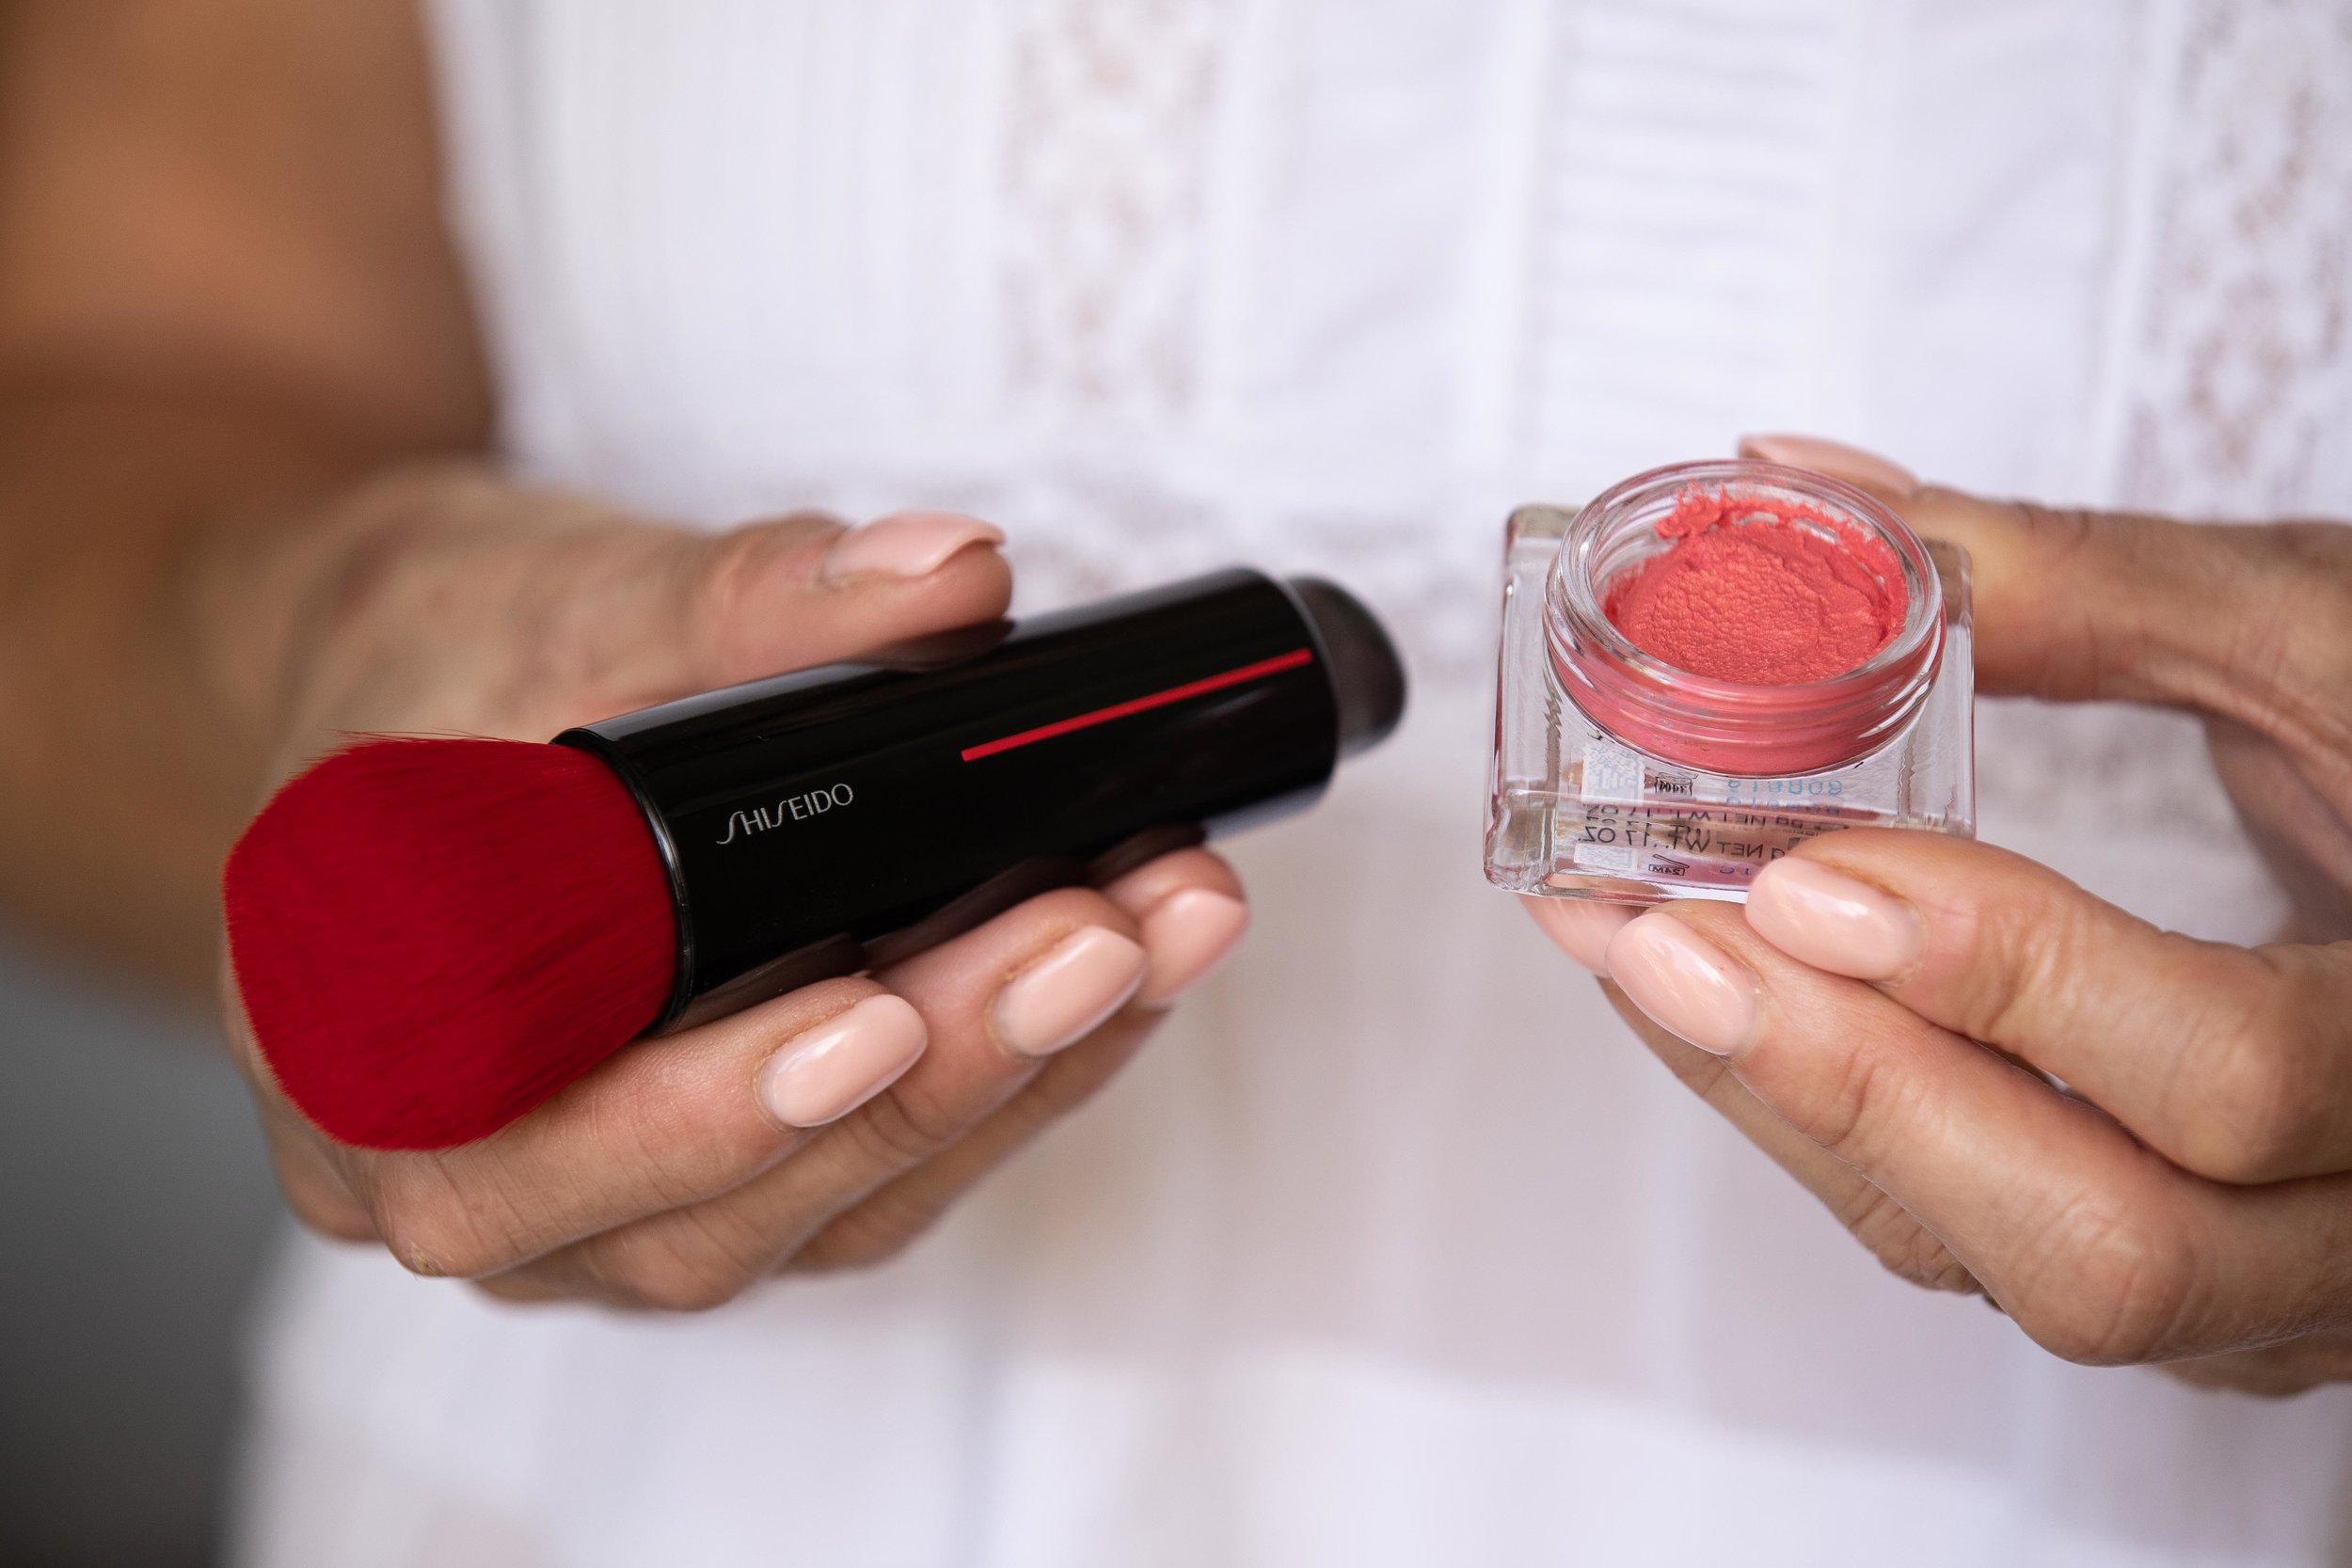 Shiseido's new makeup collection